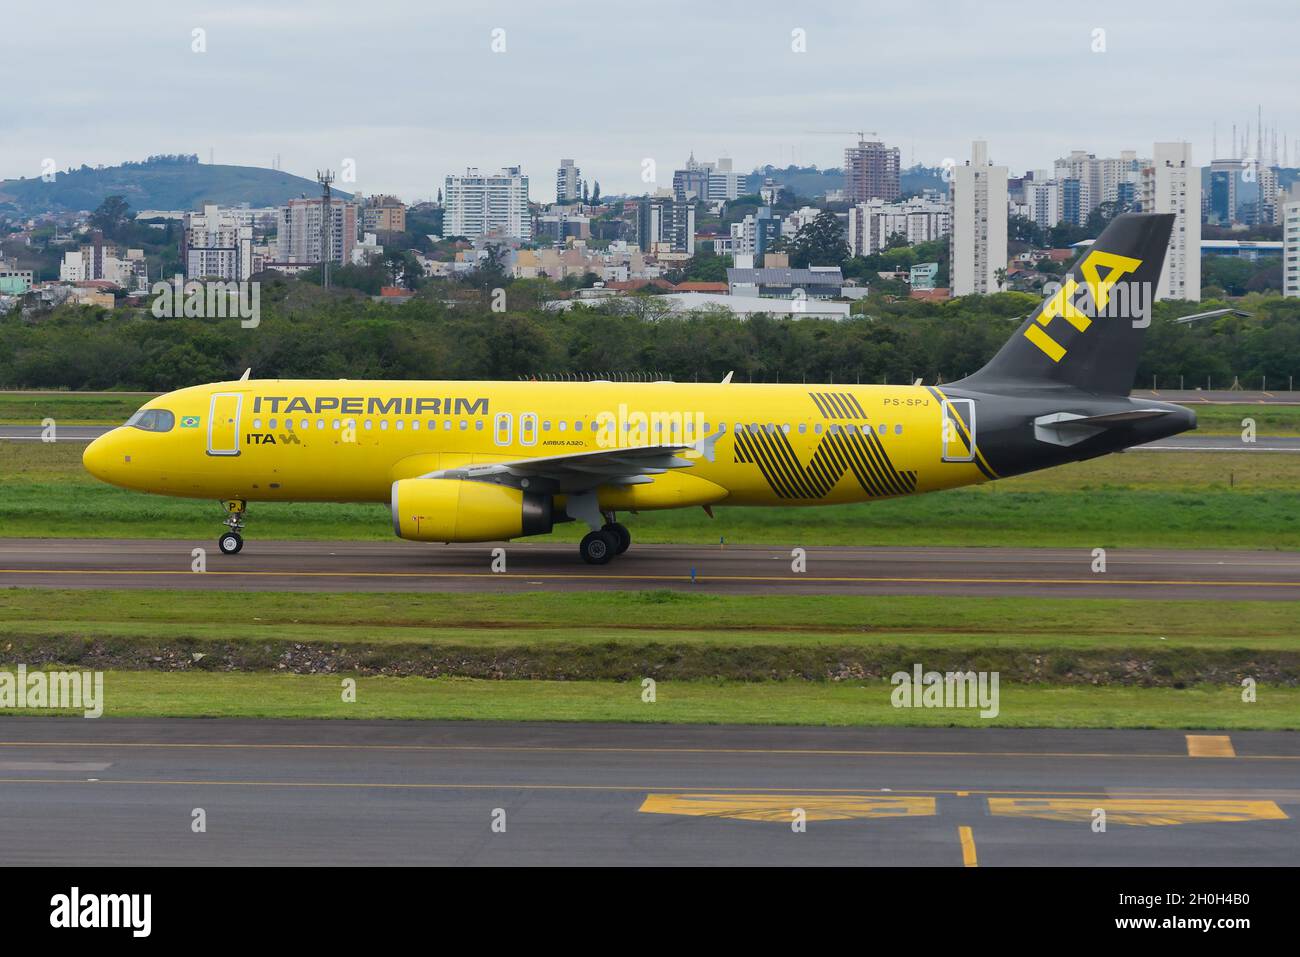 Itapemirim Airlines Airbus A320 in Brasilien. Neue brasilianische Fluggesellschaft zur Itapemirim-Gruppe. Itapemirim Flugzeug mit gelber Lackierung. Stockfoto